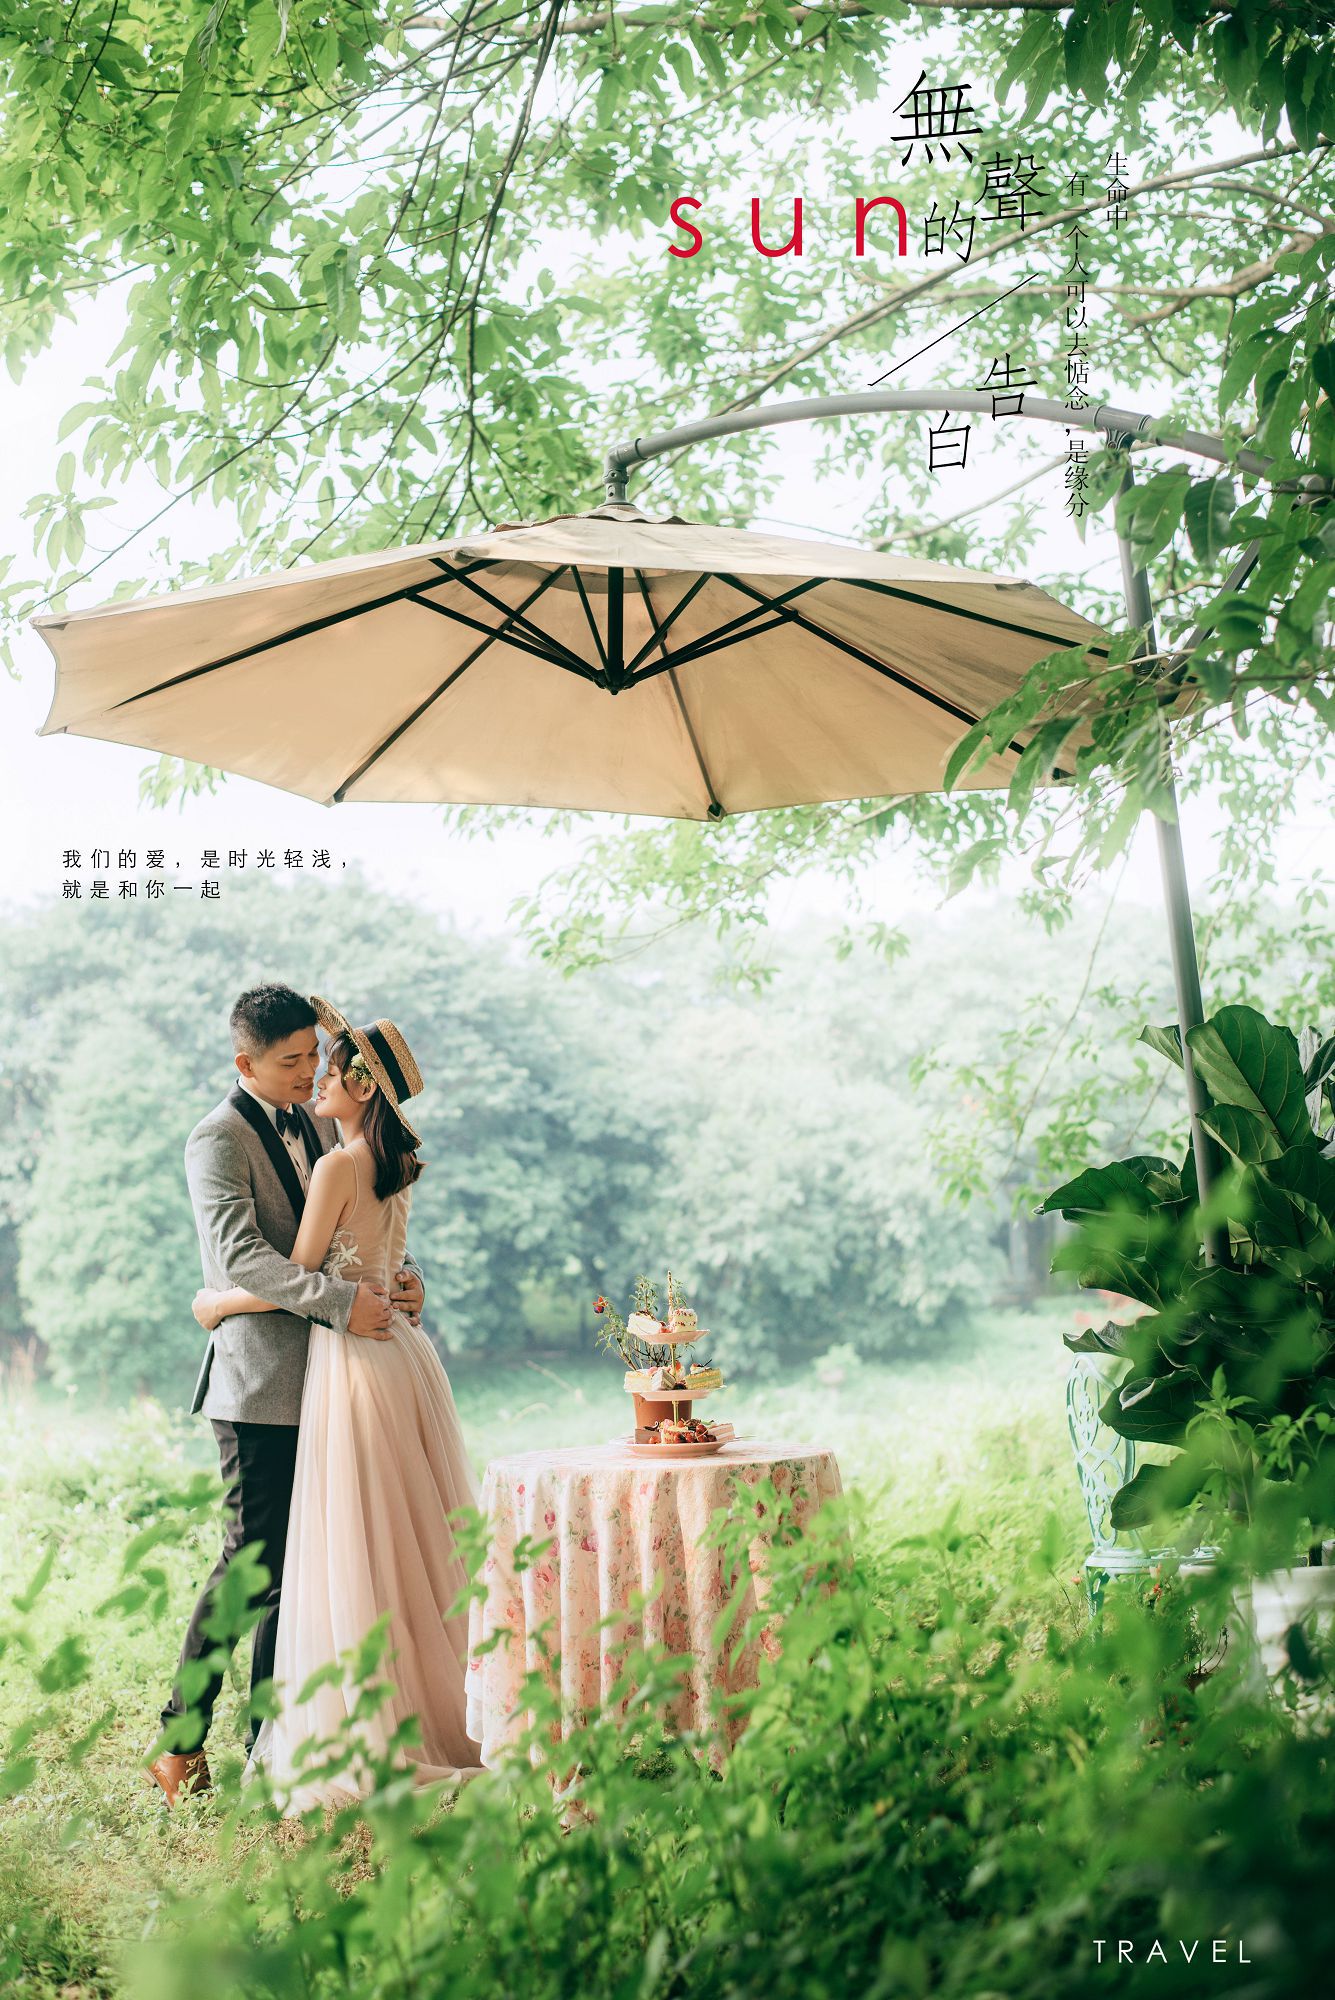 2019年7月广州婚纱照图片,茂名婚纱照,婚纱照图片